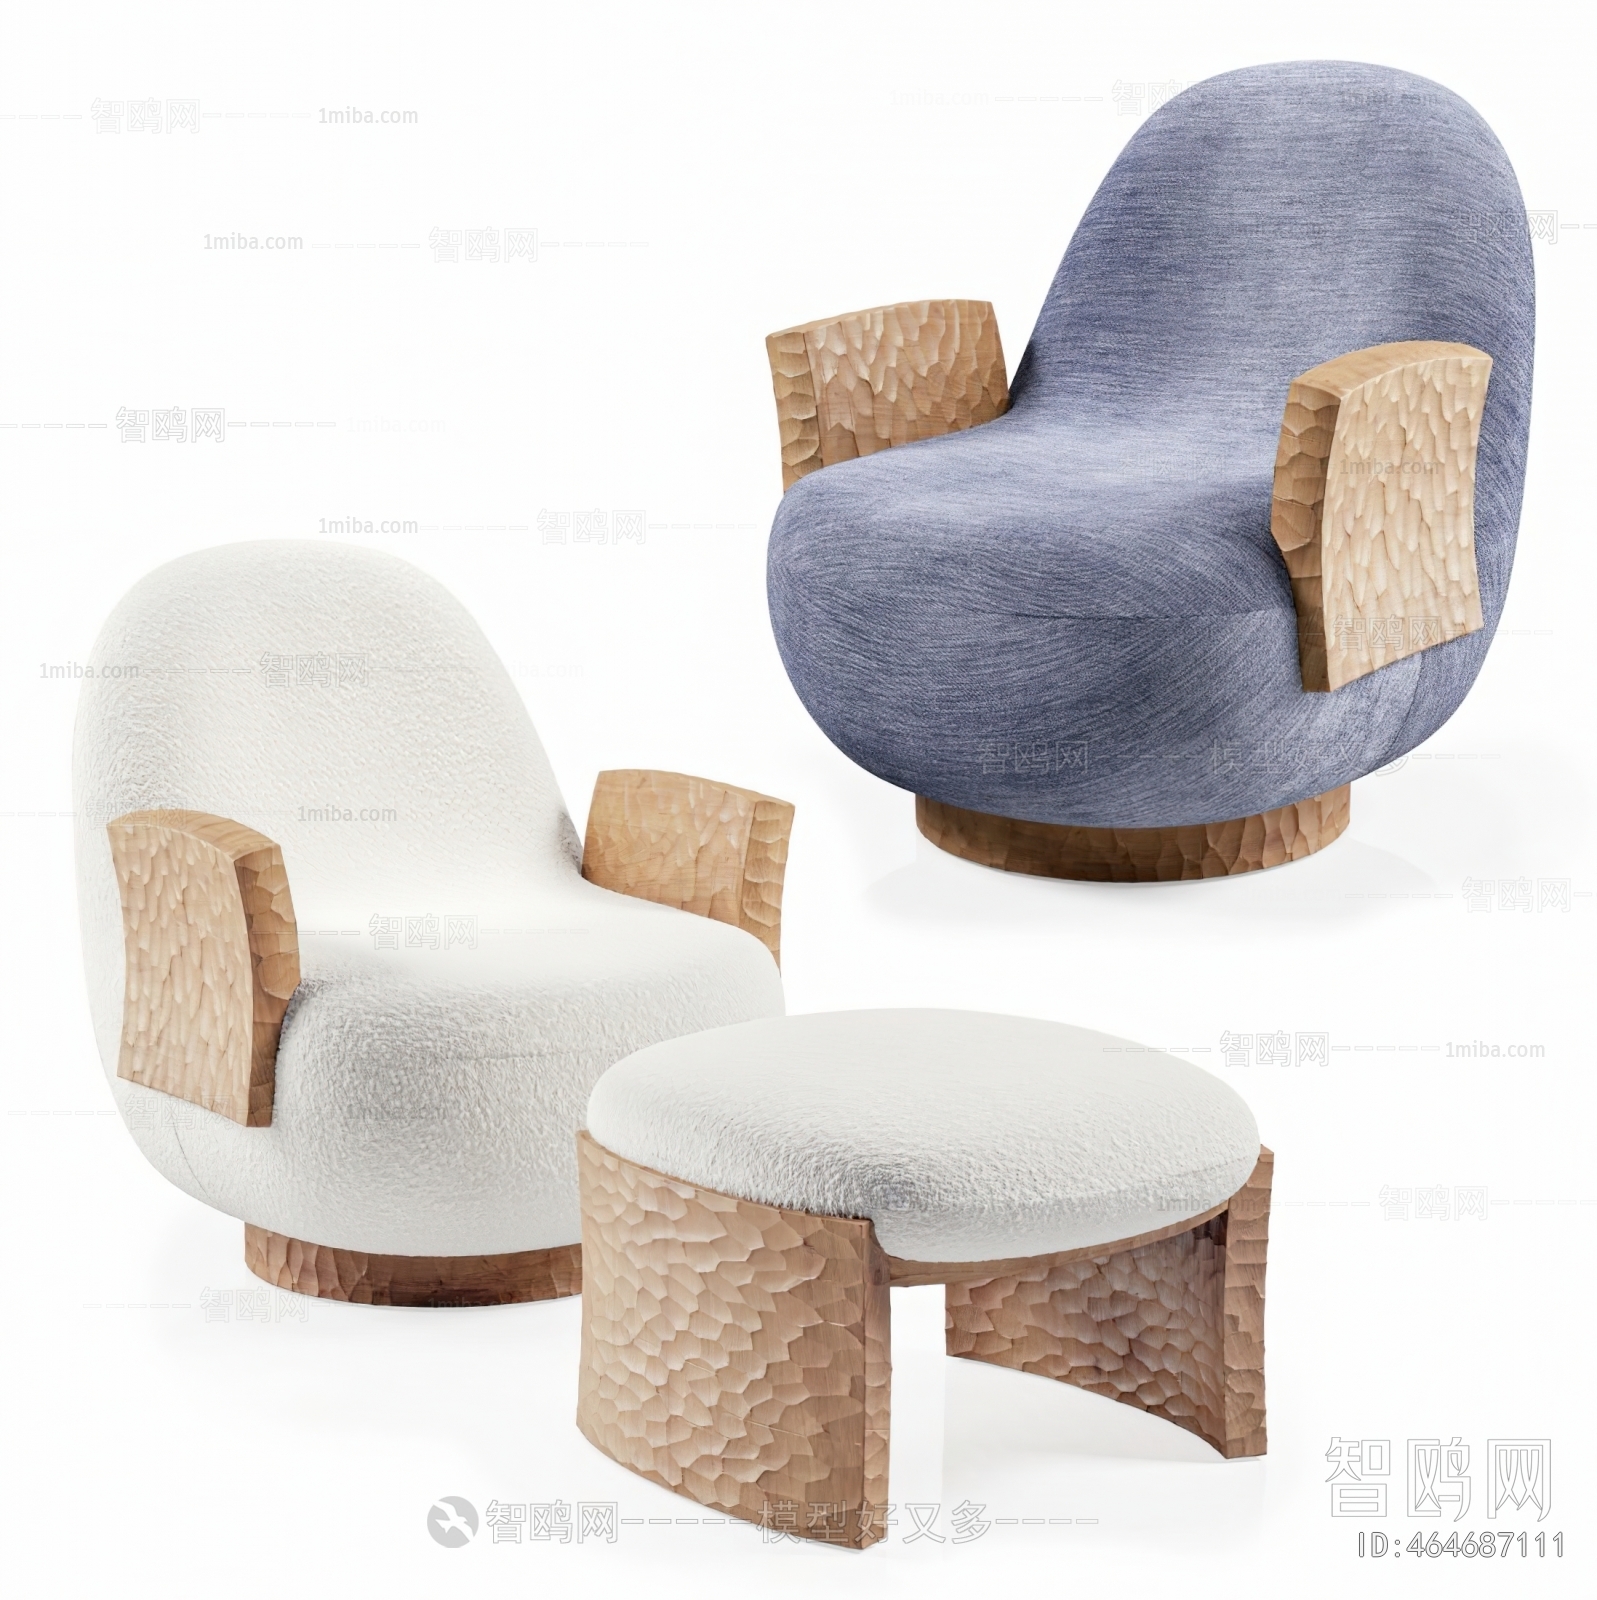 Wabi-sabi Style Single Sofa